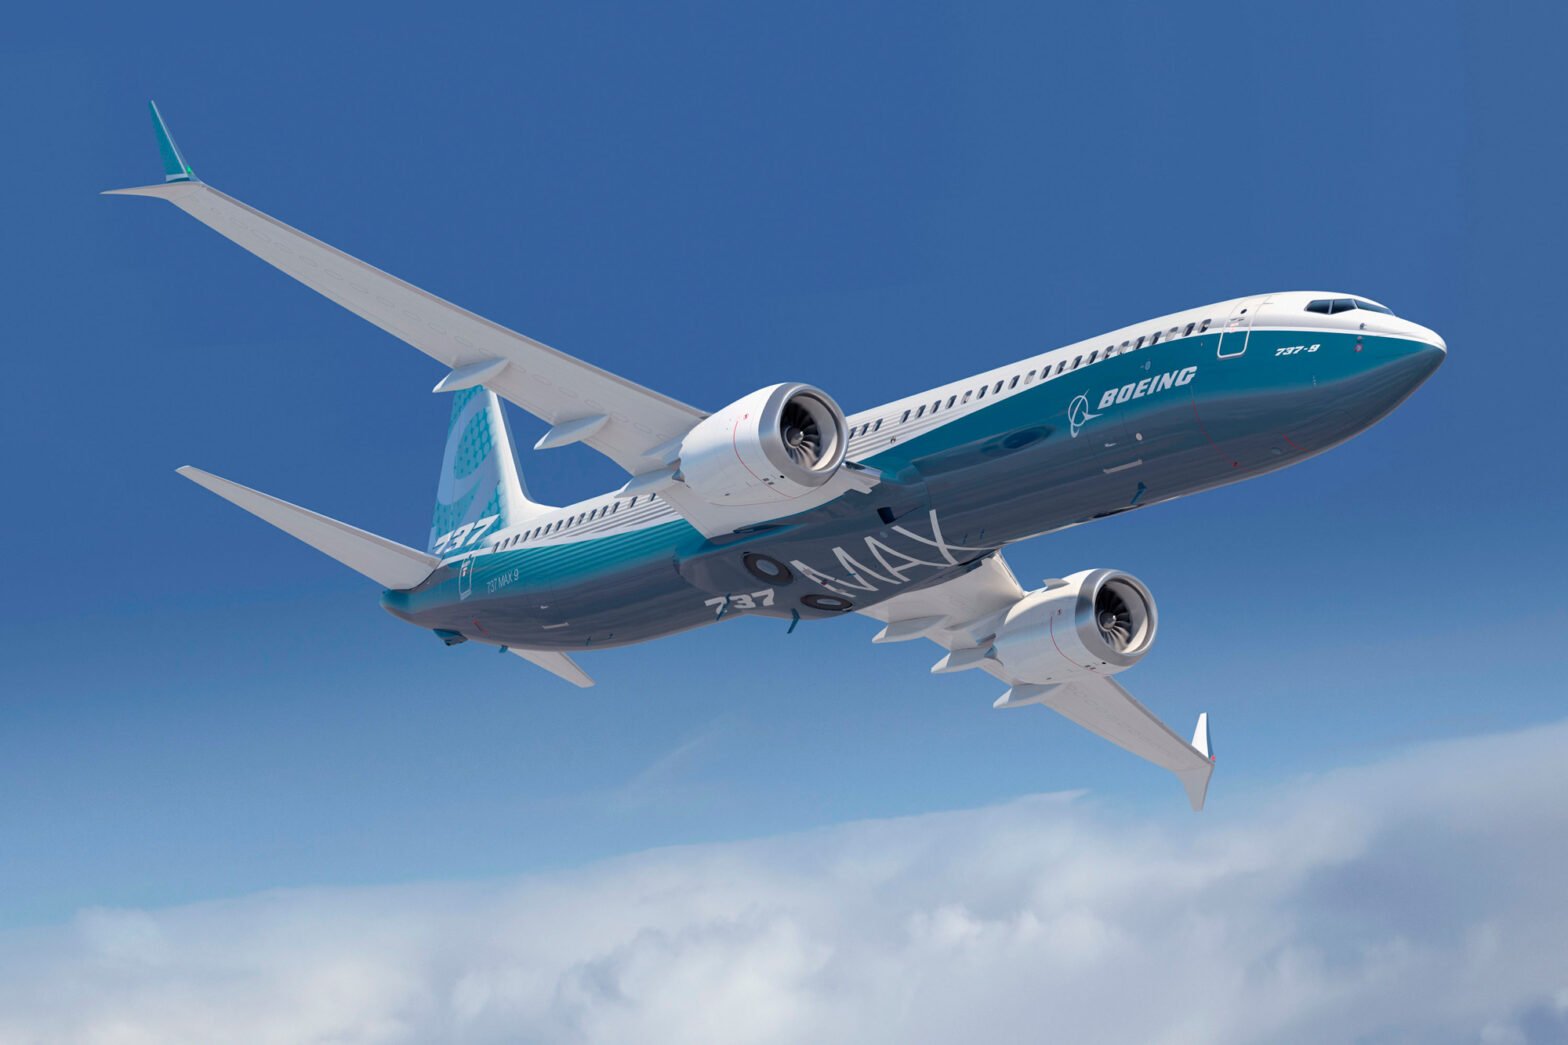 चेतावनीको घण्टी बजिरहेको छ: के बिना आधार 737 MAX साँच्चै सुरक्षित छ?